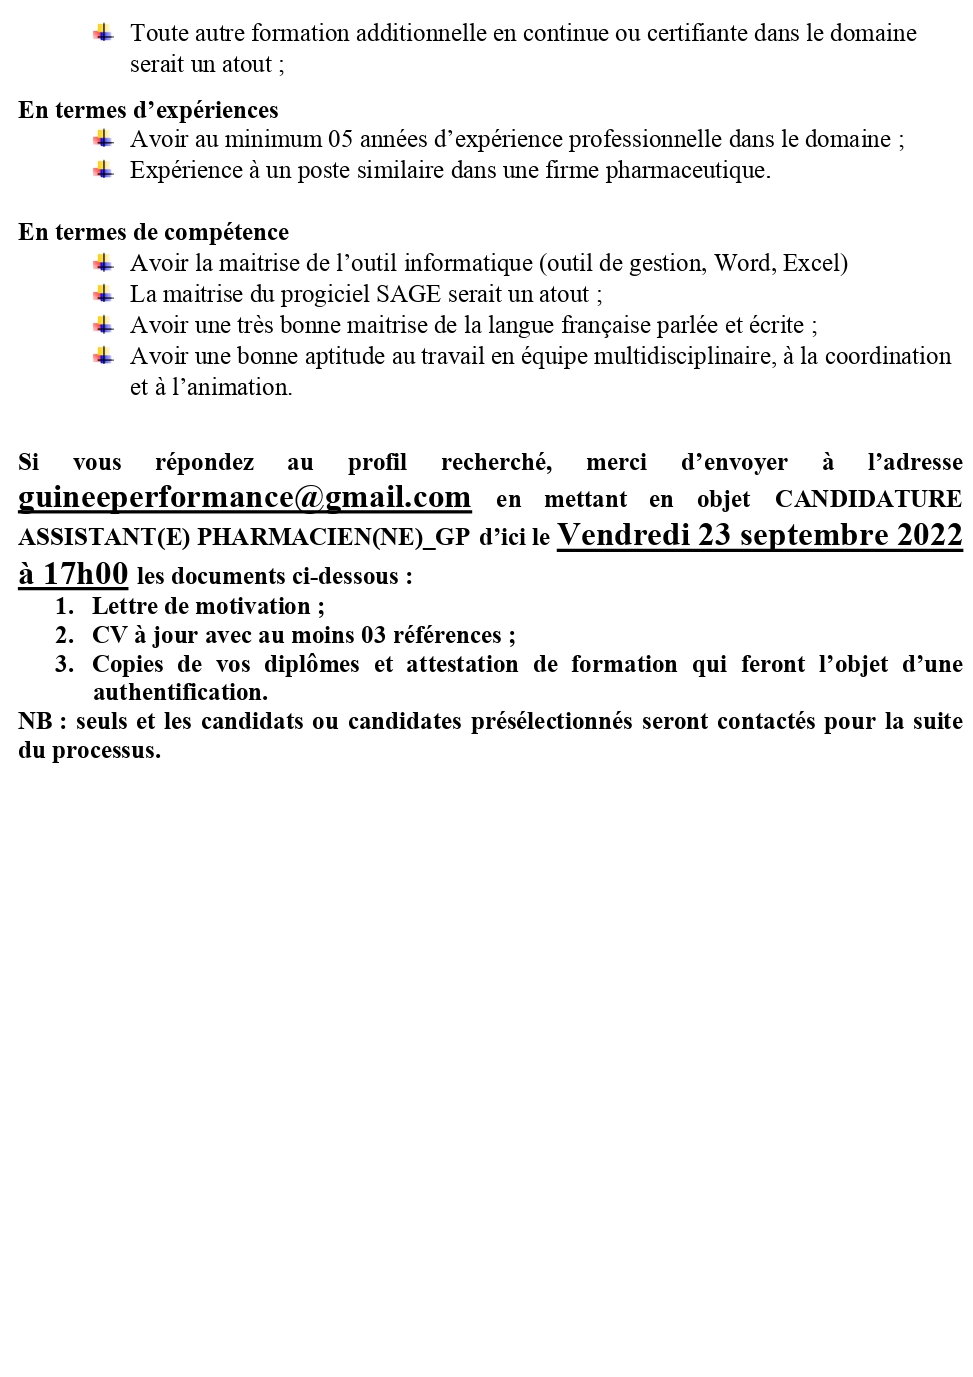 AVIS DE RECRUTEMENT D'UN(E) ASSISTANT(E) PHARMACIEN(NE) (H/F) | Page 2